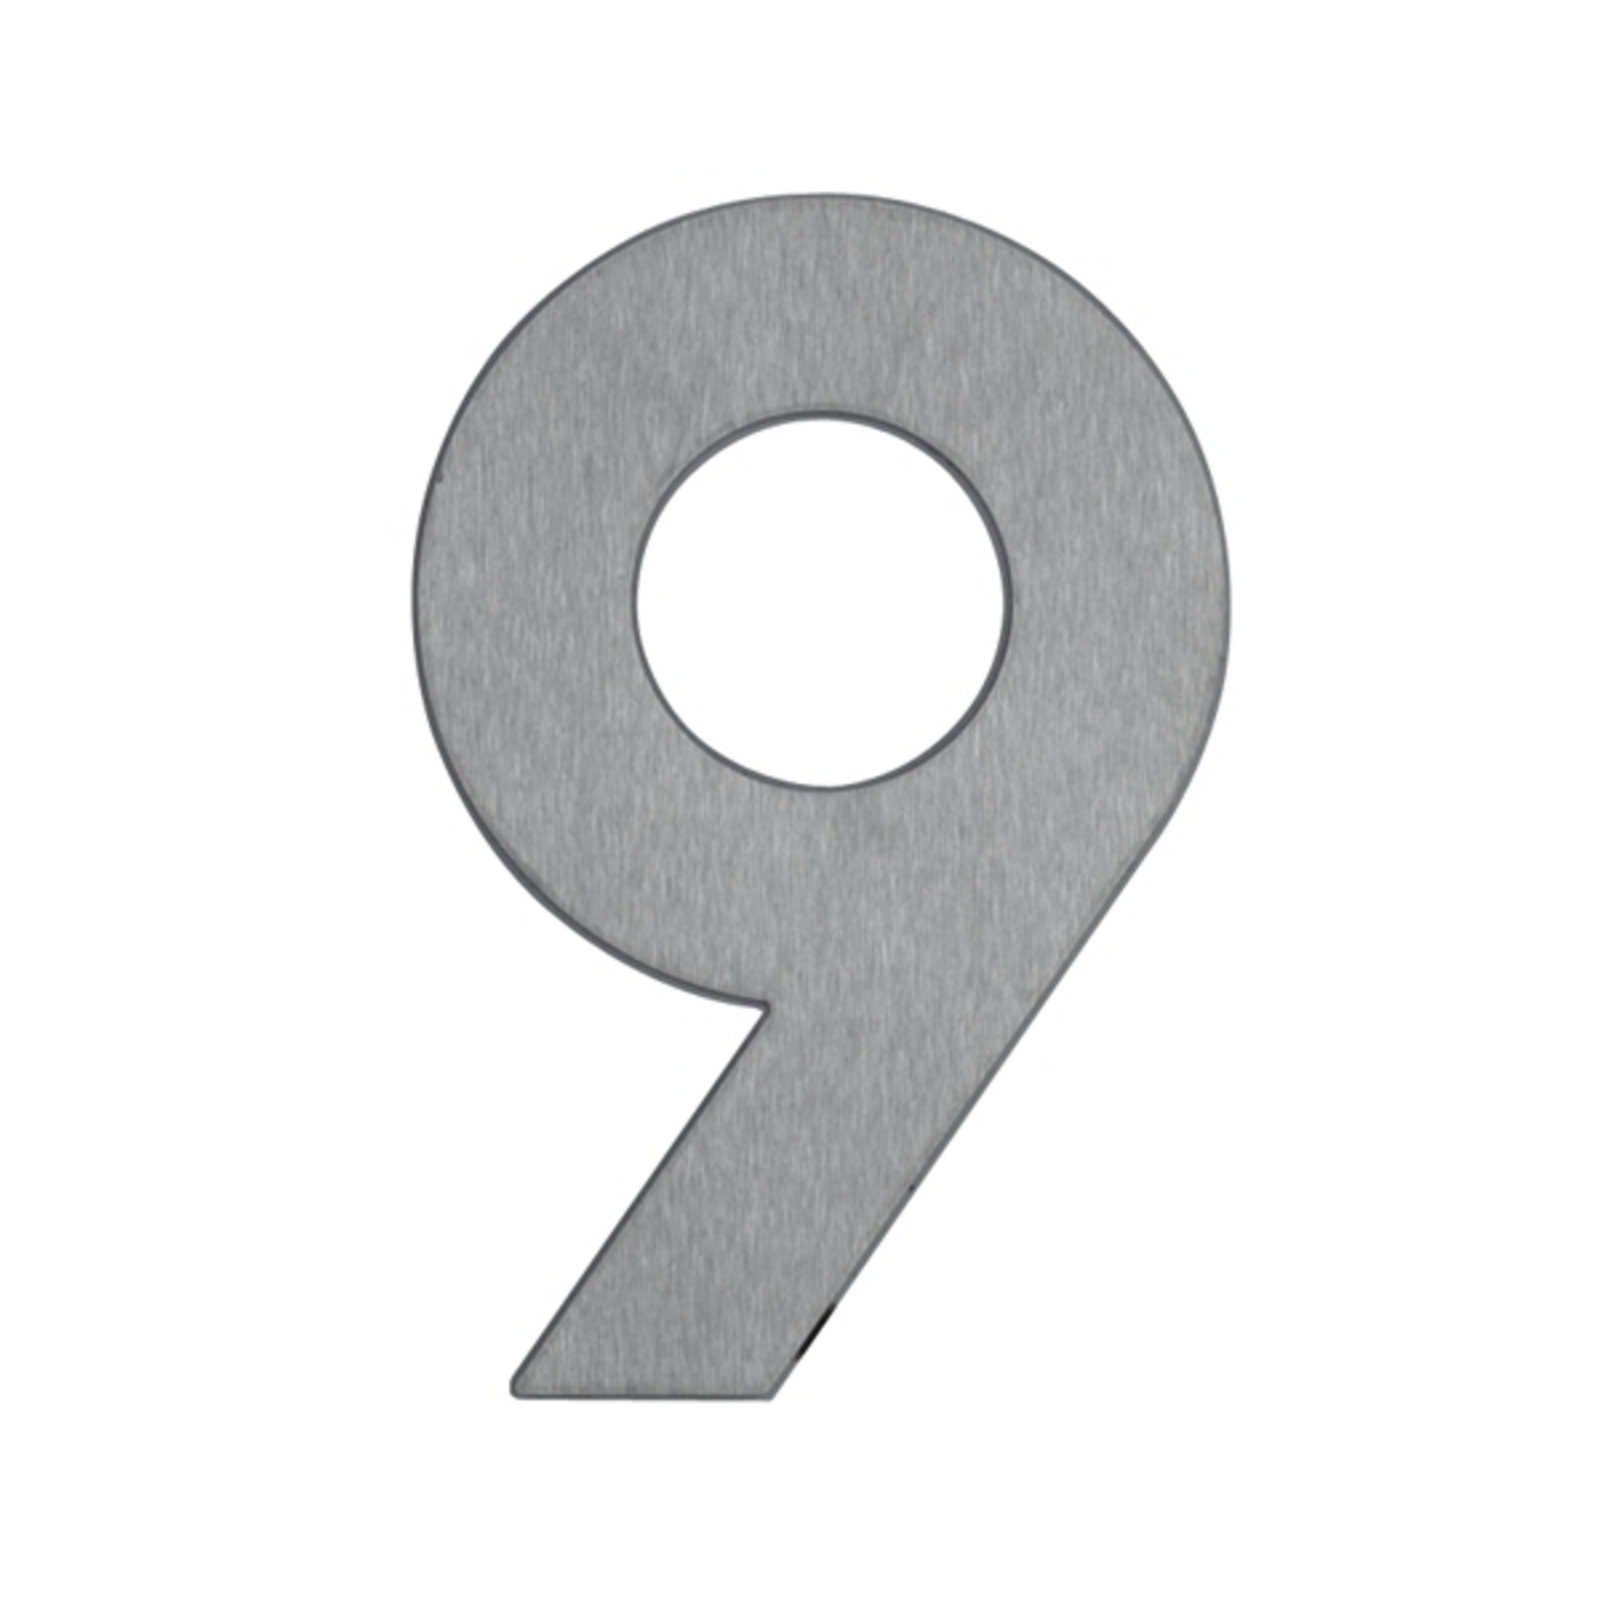 Kućni broj 9 - izrađen od nehrđajućeg čelika